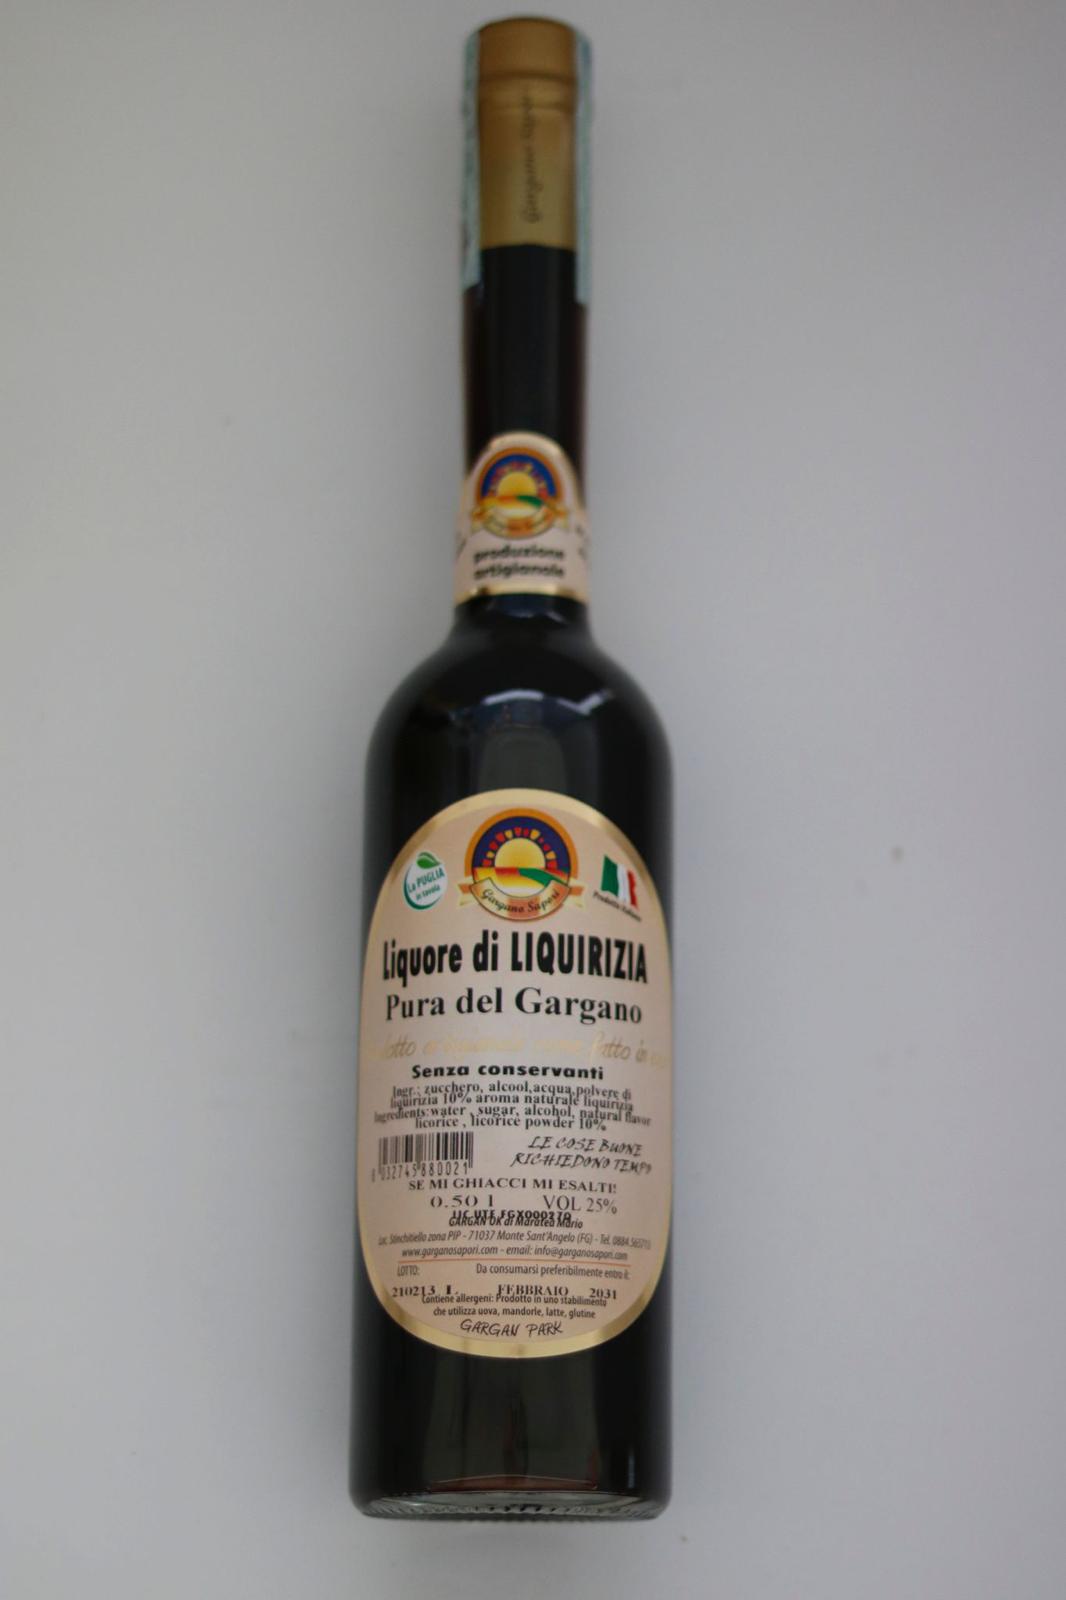 LIQUORE DI LIQUIRIZIA DEL GARGANO 500 ML - 2 Bottiglie - I migliori prodotti Made in Italy da Fiera di Monza Shop - Solo 27.90€! Acquista subito su Fiera di Monza Shop!